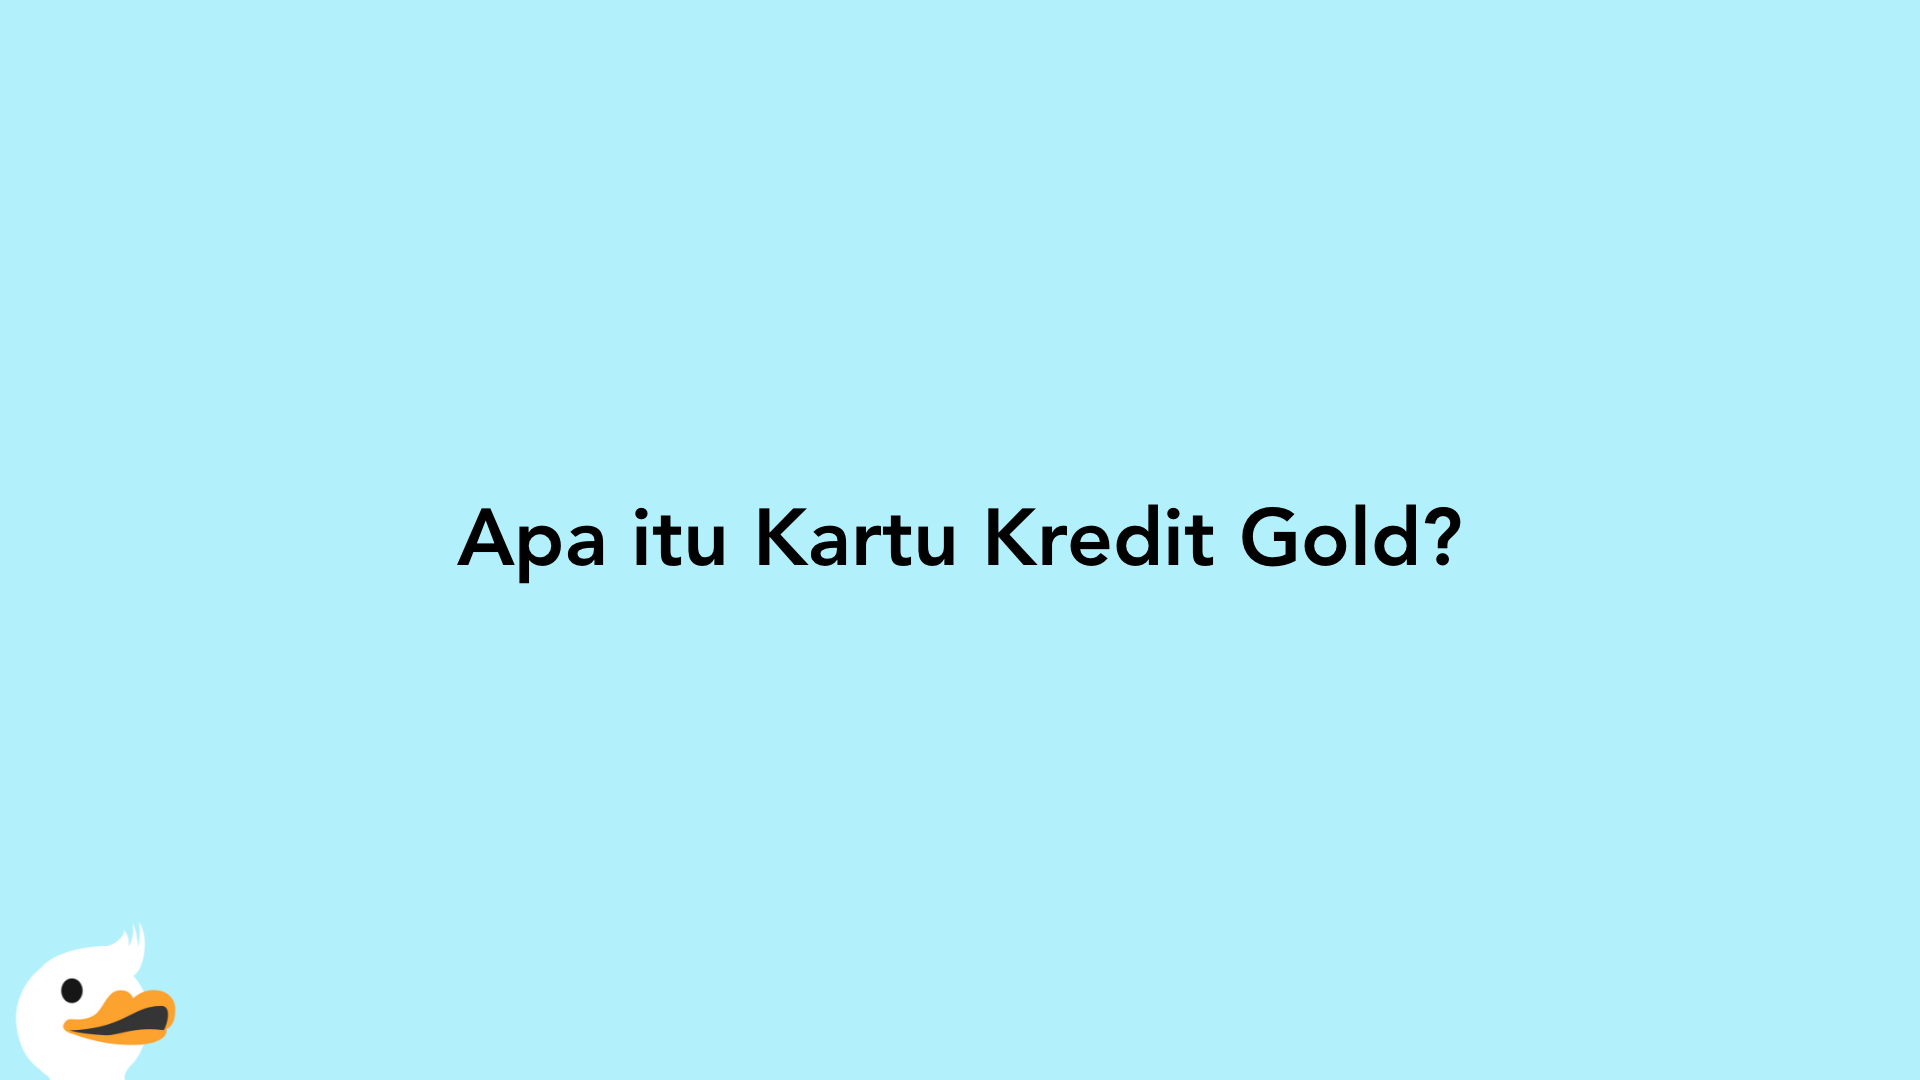 Apa itu Kartu Kredit Gold?